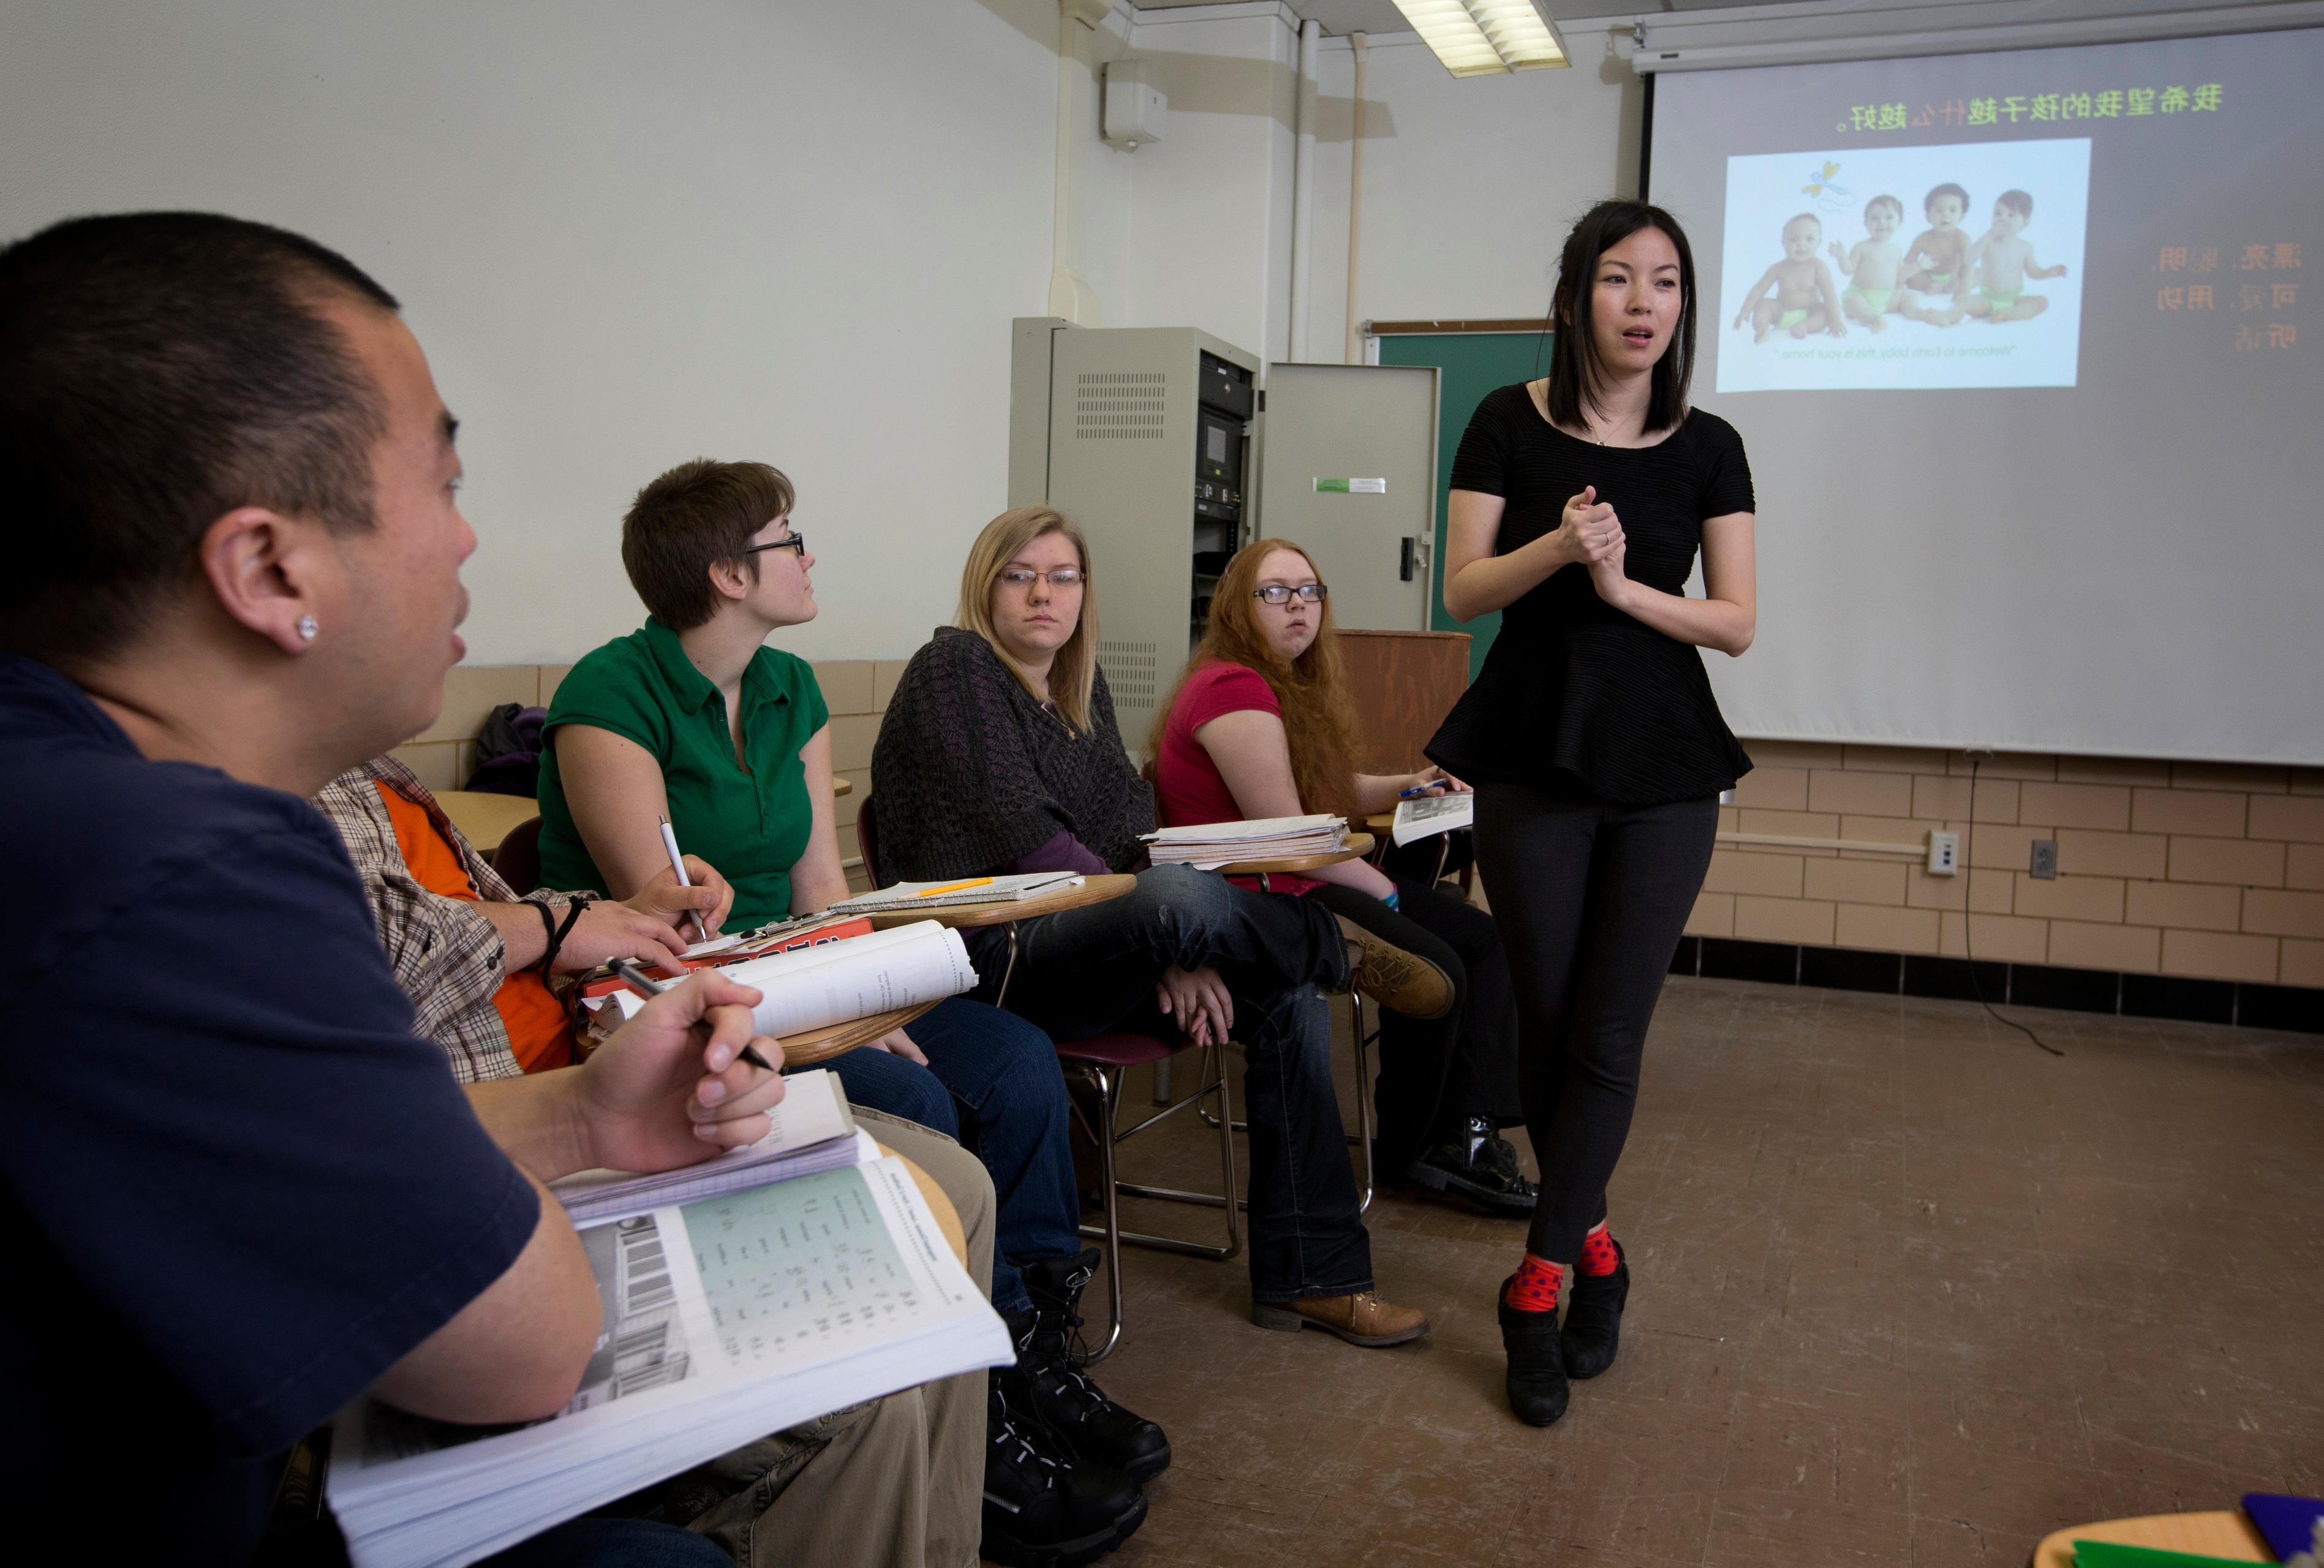 一群波士顿州立大学的学生坐在课桌前专心听教授讲课